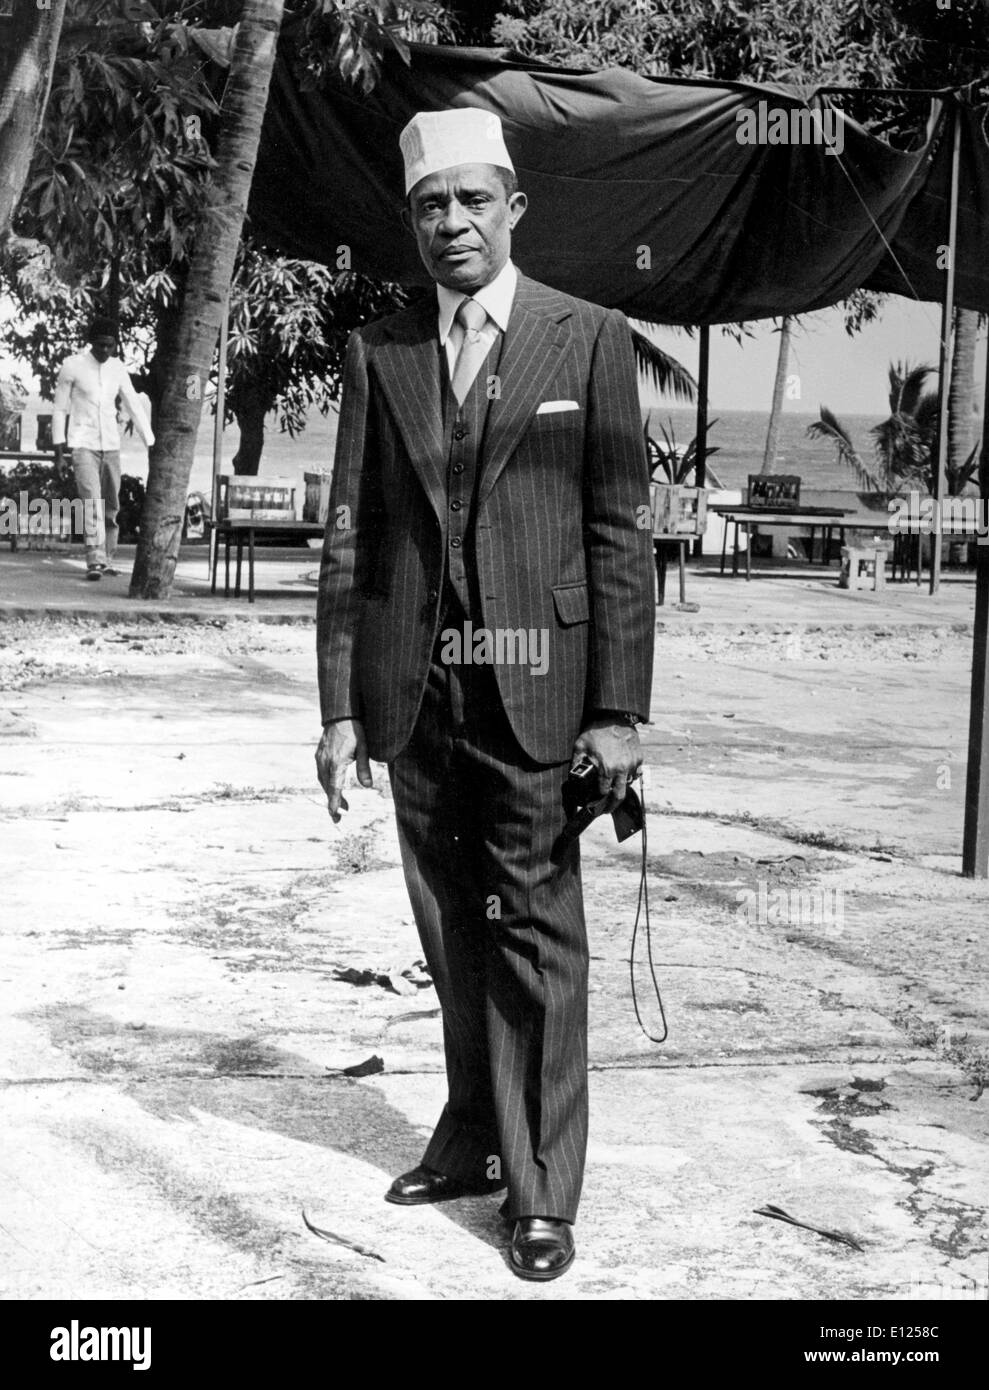 Maggio 12, 1987; Mutsamudu, Comore; copresidente di Comore Ahmed Abdallah nasce nel giugno 12th, 1919 a Dimoni, sull'isola di Anjouan in Comore situato nell'Oceano Indiano. Egli fu il primo presidente delle isole Comore dopo l'indipendenza dalla Francia . Abdallah ha cominciato a partecipare al governo in 1940 e presto divenne uno dei più importanti non-politica francese figure nelle Comore. Egli è stato il presidente del consiglio generale dal 1949 fino al 1953. Egli è stato ucciso con un colpo di stato militare in novembre 27th, 1989. (Credito Immagine: KEYSTONE Pictures USA/ZUMAPRESS.com) Foto Stock